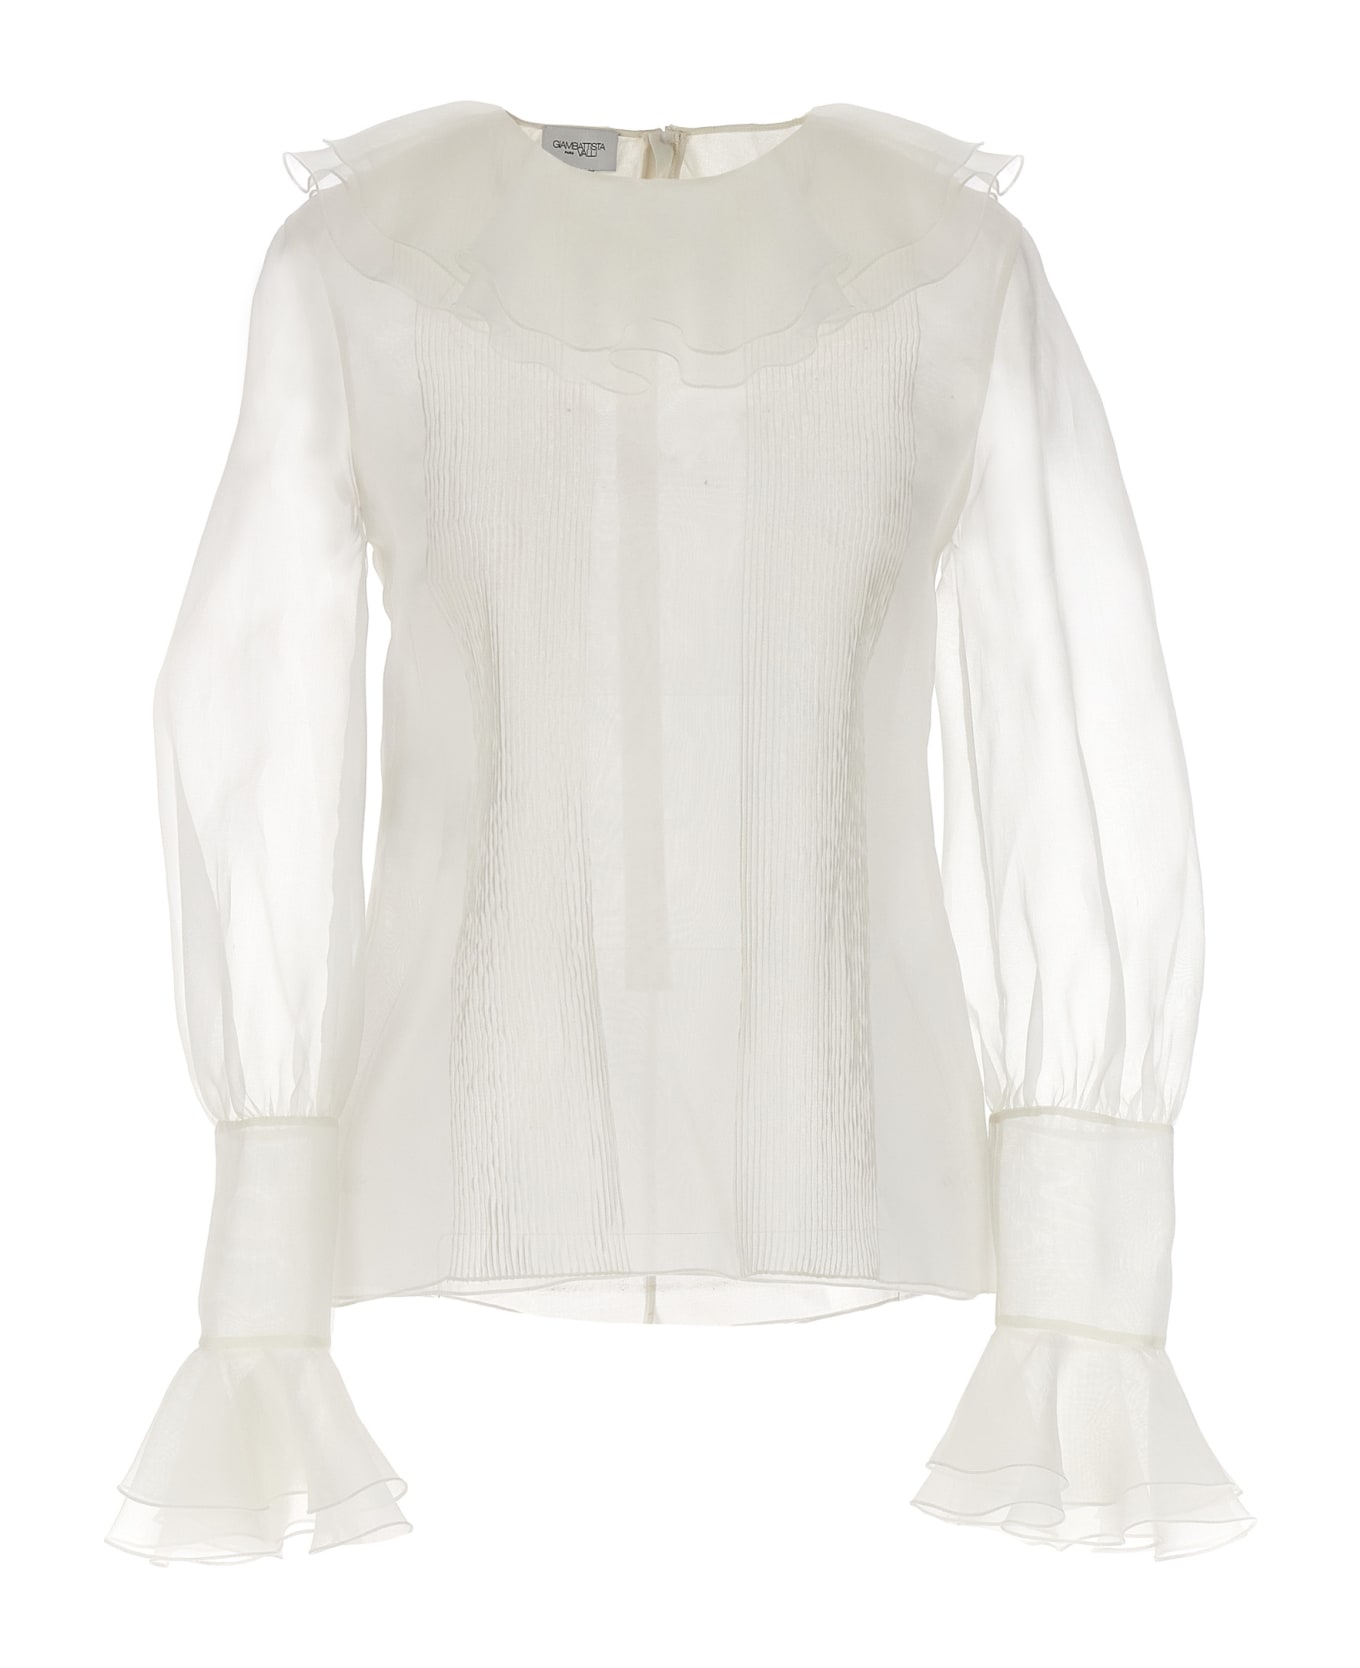 Giambattista Valli Ruffle Collar Shirt - White